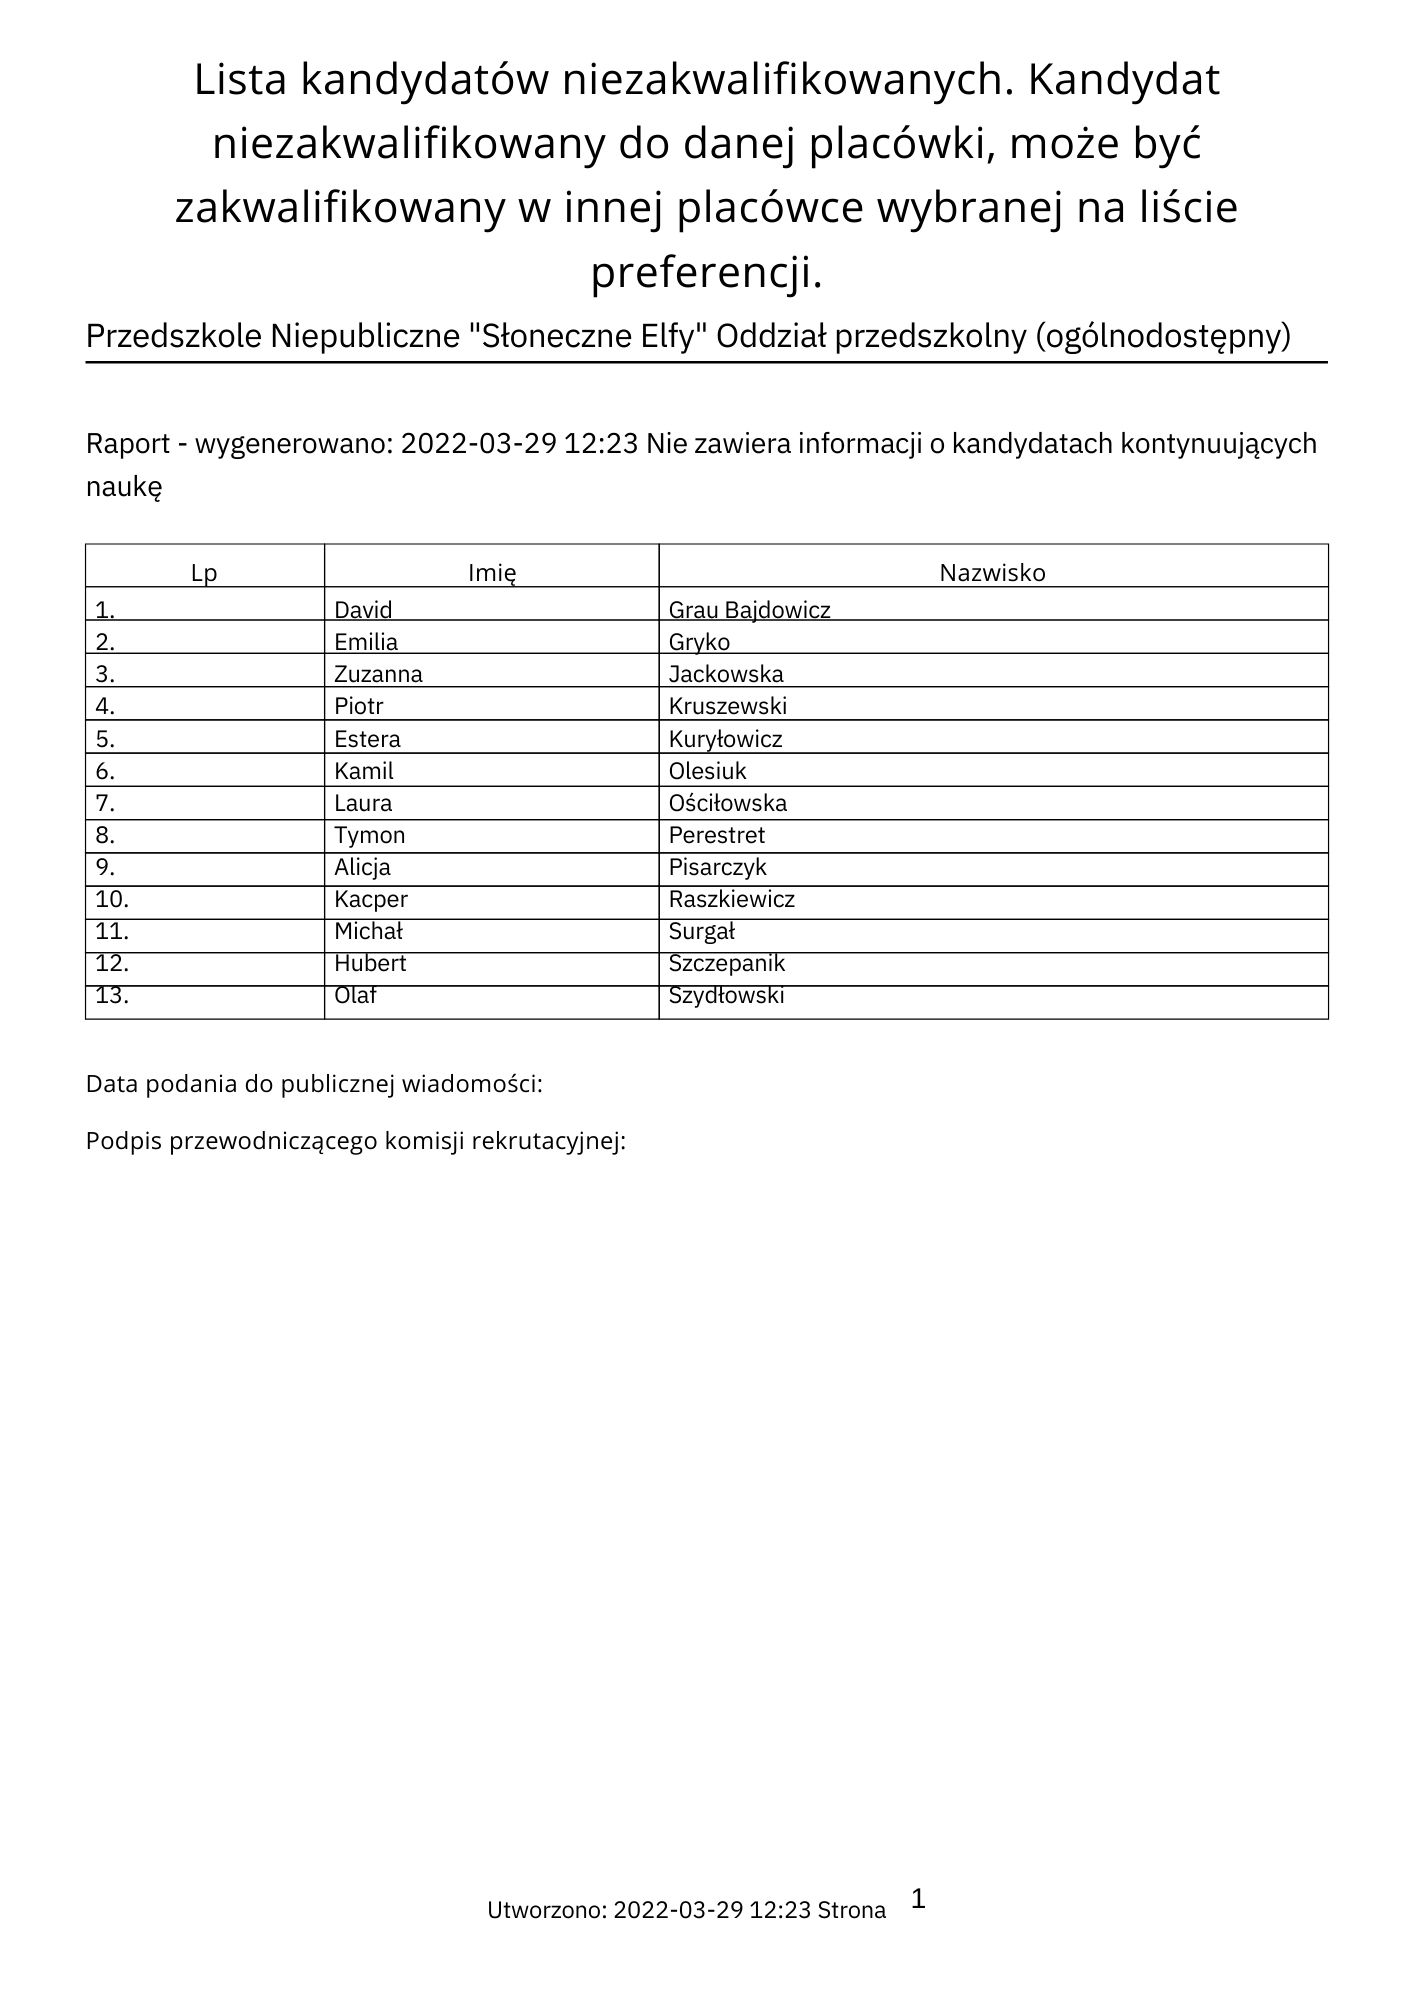 Lista_kandydatów_niezakwalifikowanych_29-03-2022.pdf.jpg